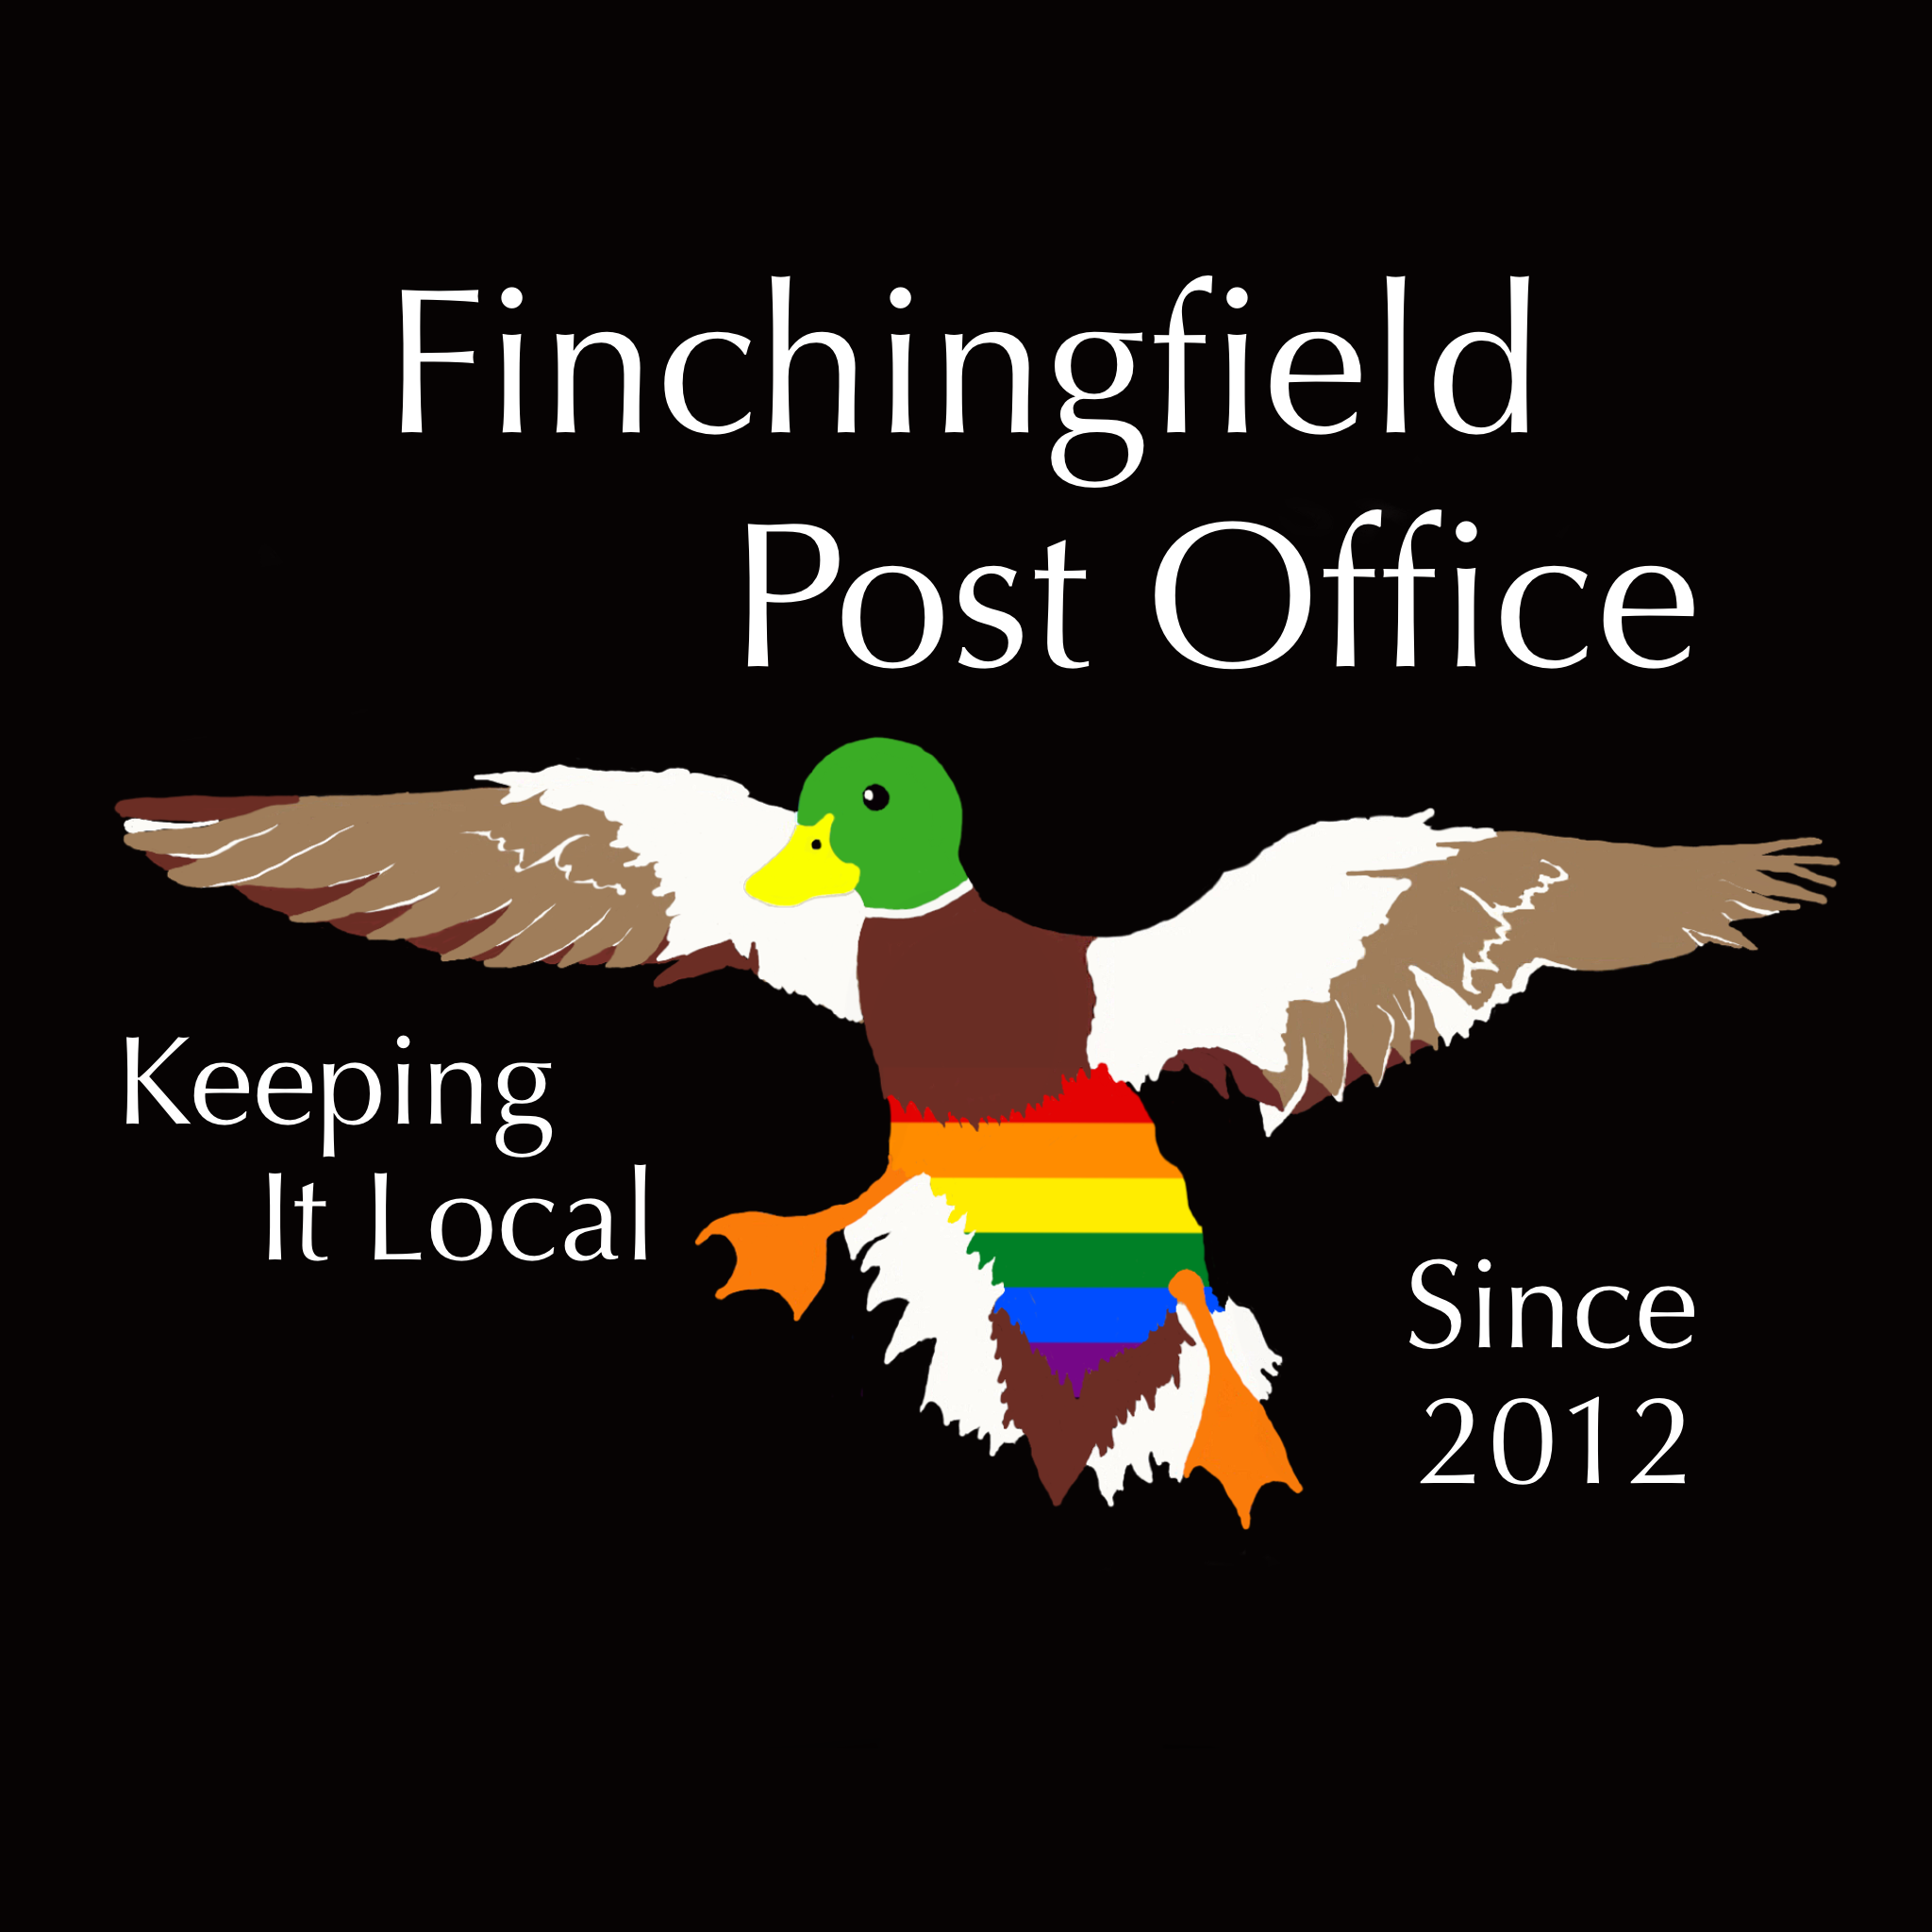 Finchingfield Post Office